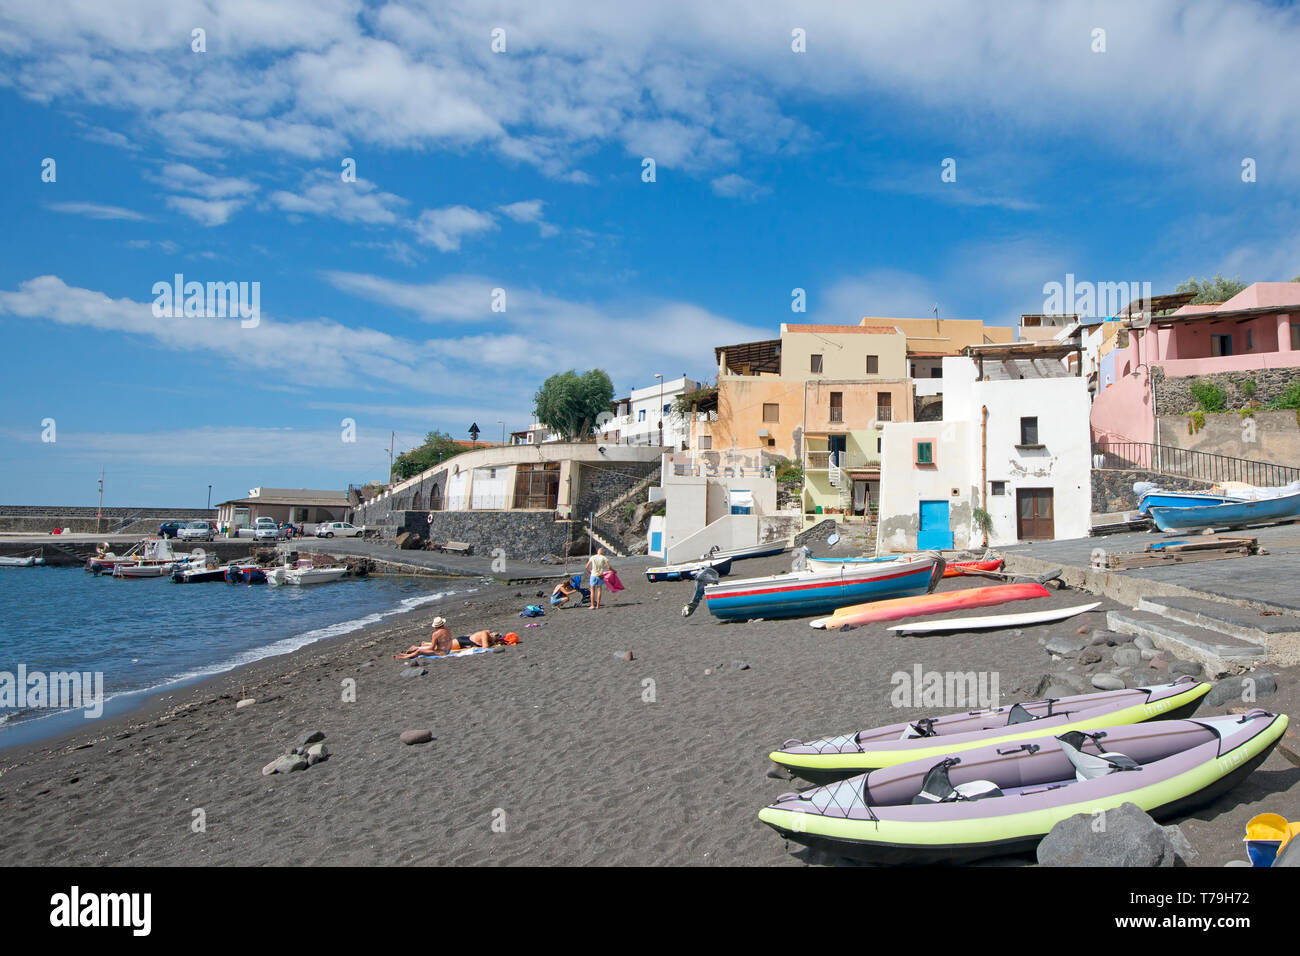 The beach of Rinella village, Salina Island, Aeolian Archipelago, Sicily, Italy Stock Photo